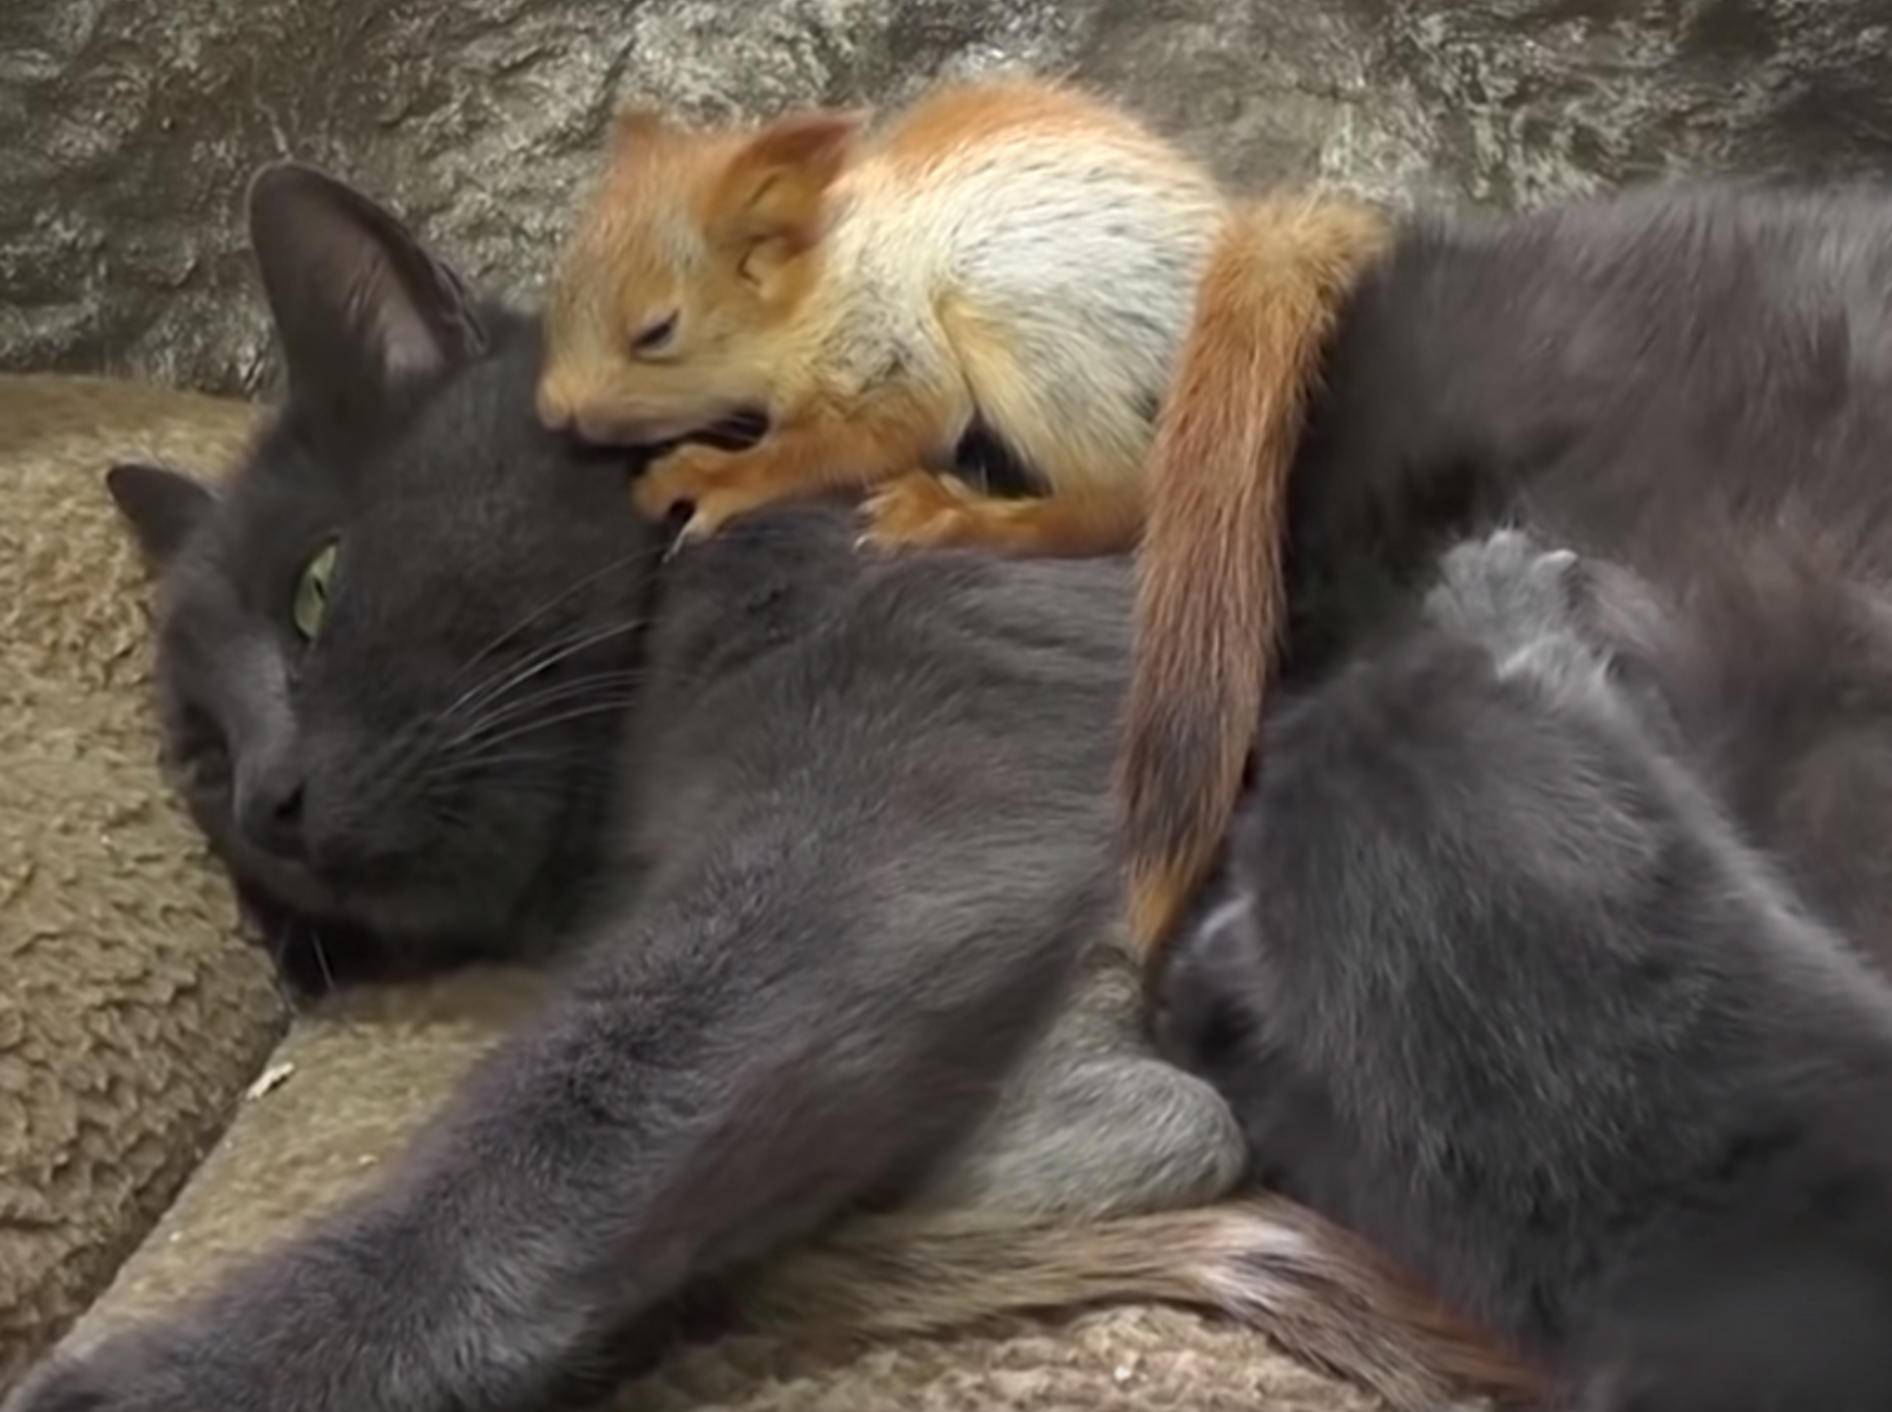 Katze Puscha kümmert sich liebevoll um vier verwaiste Eichhörnchen-Babys - Bild: YouTube/euronews (deutsch)